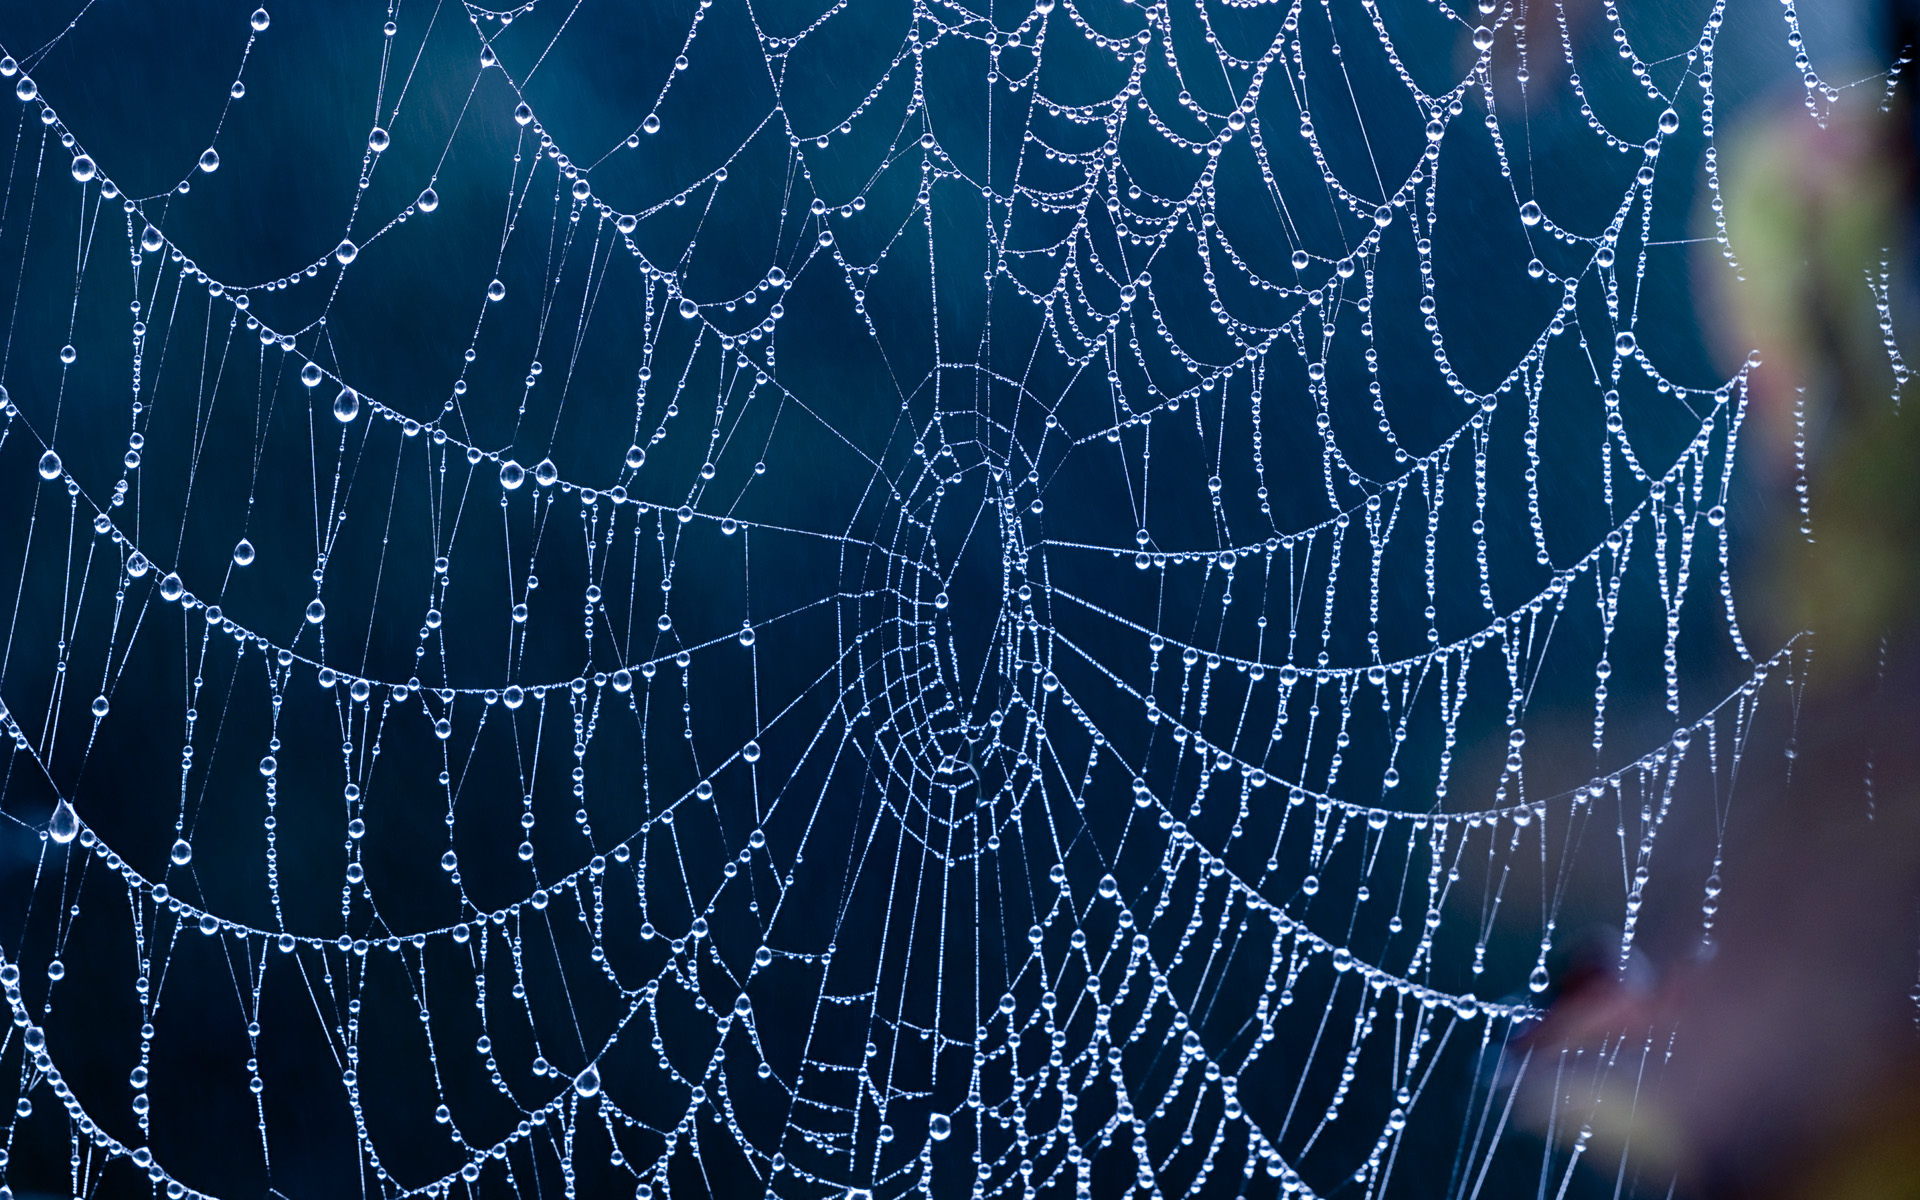 spider web wallpaper,spider web,water,blue,moisture,invertebrate